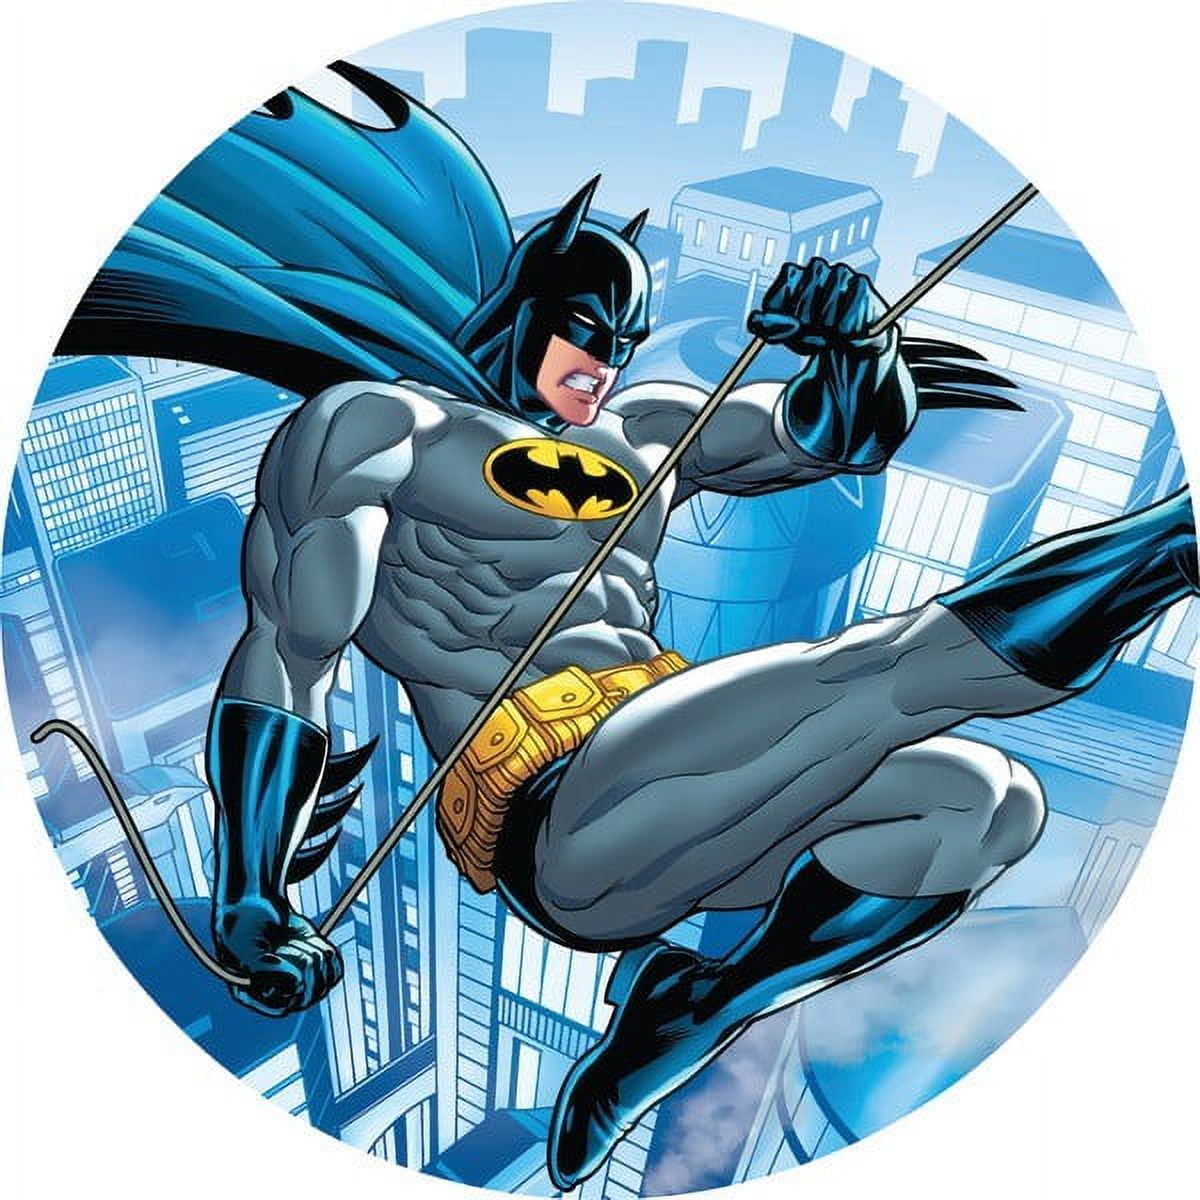 Projectables DC Comics Batman LED Plug-In Night Light, Bat Signal, 14536